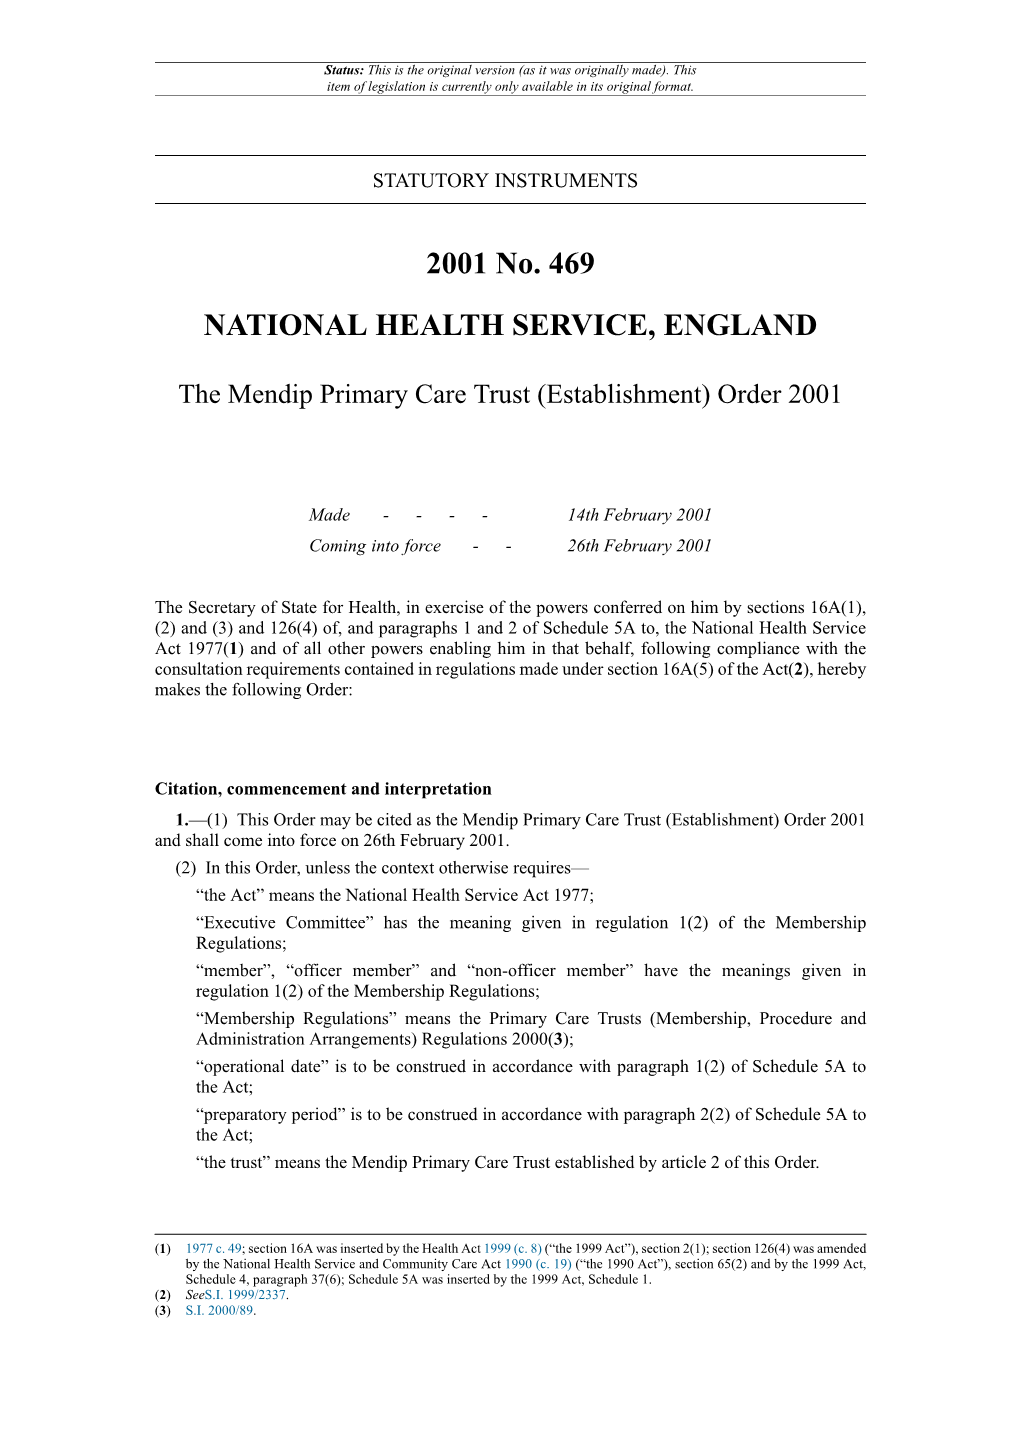 The Mendip Primary Care Trust (Establishment) Order 2001